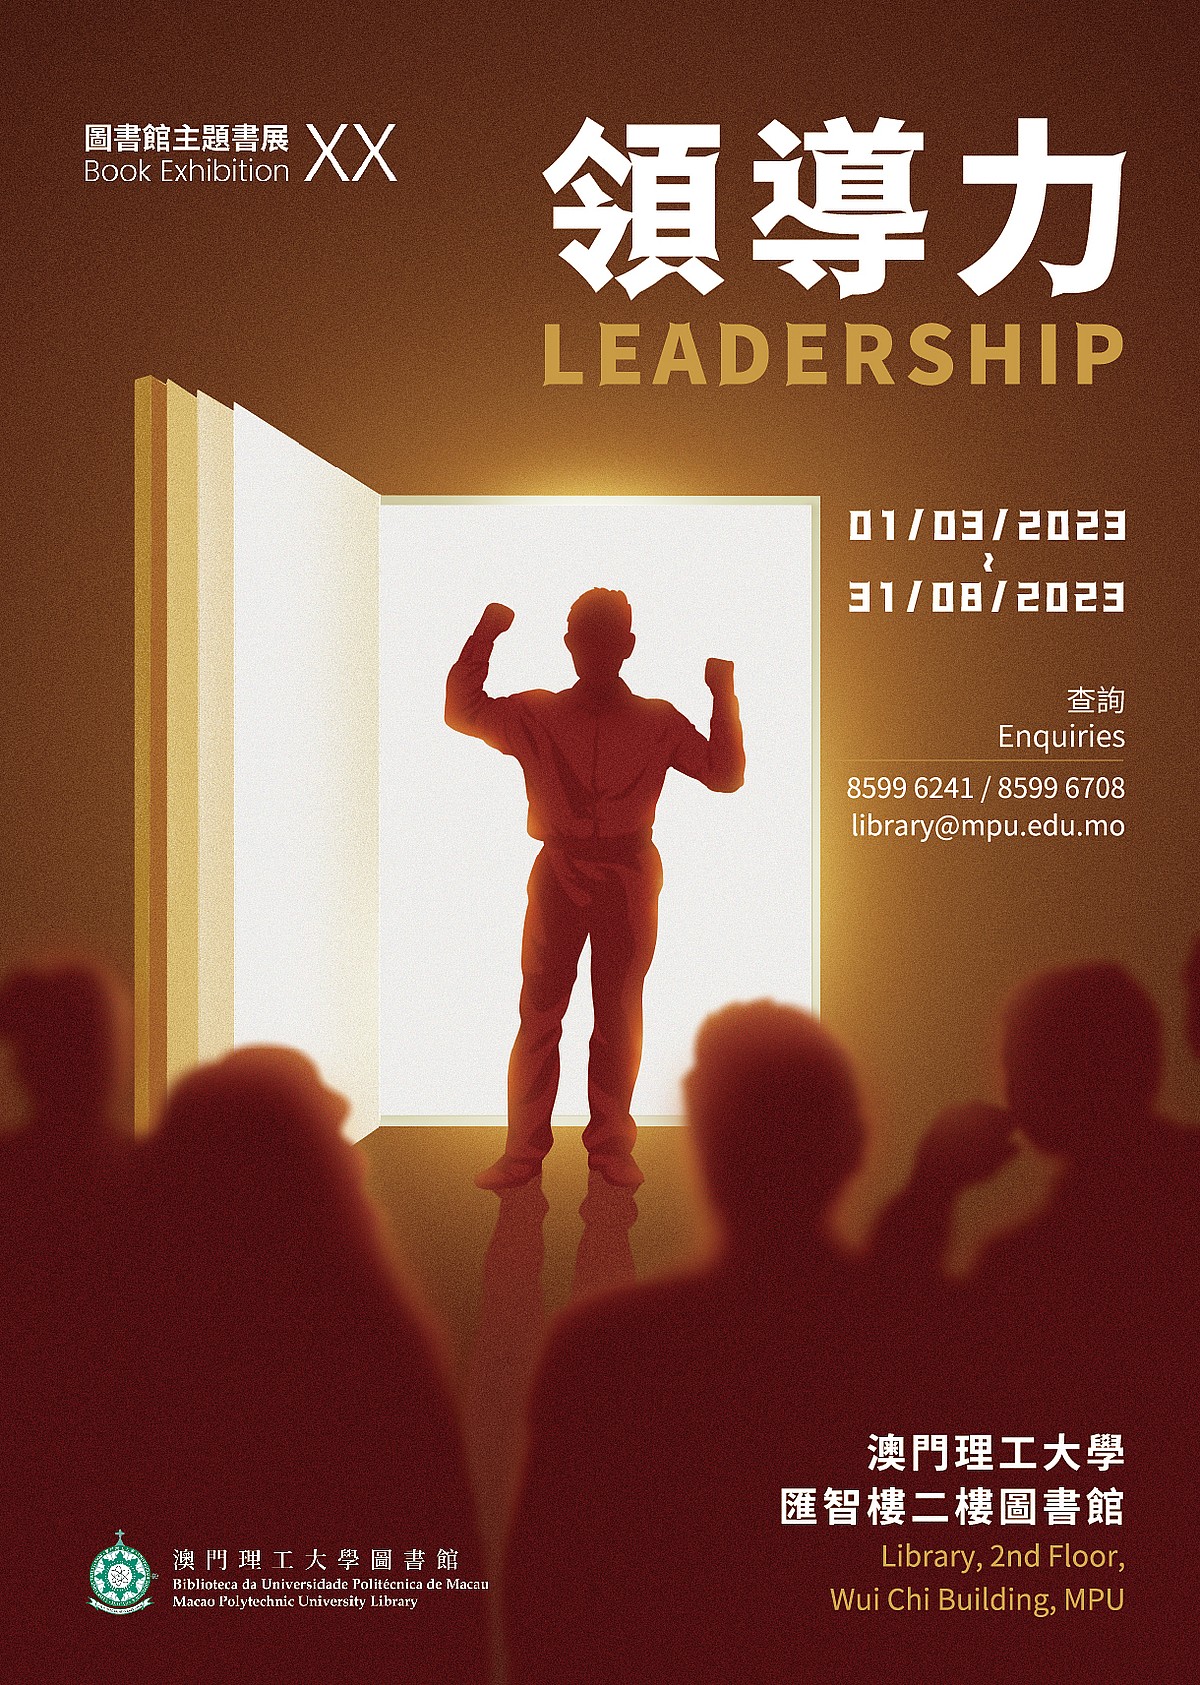 BOOK EXHIBITION 20 : Leadership